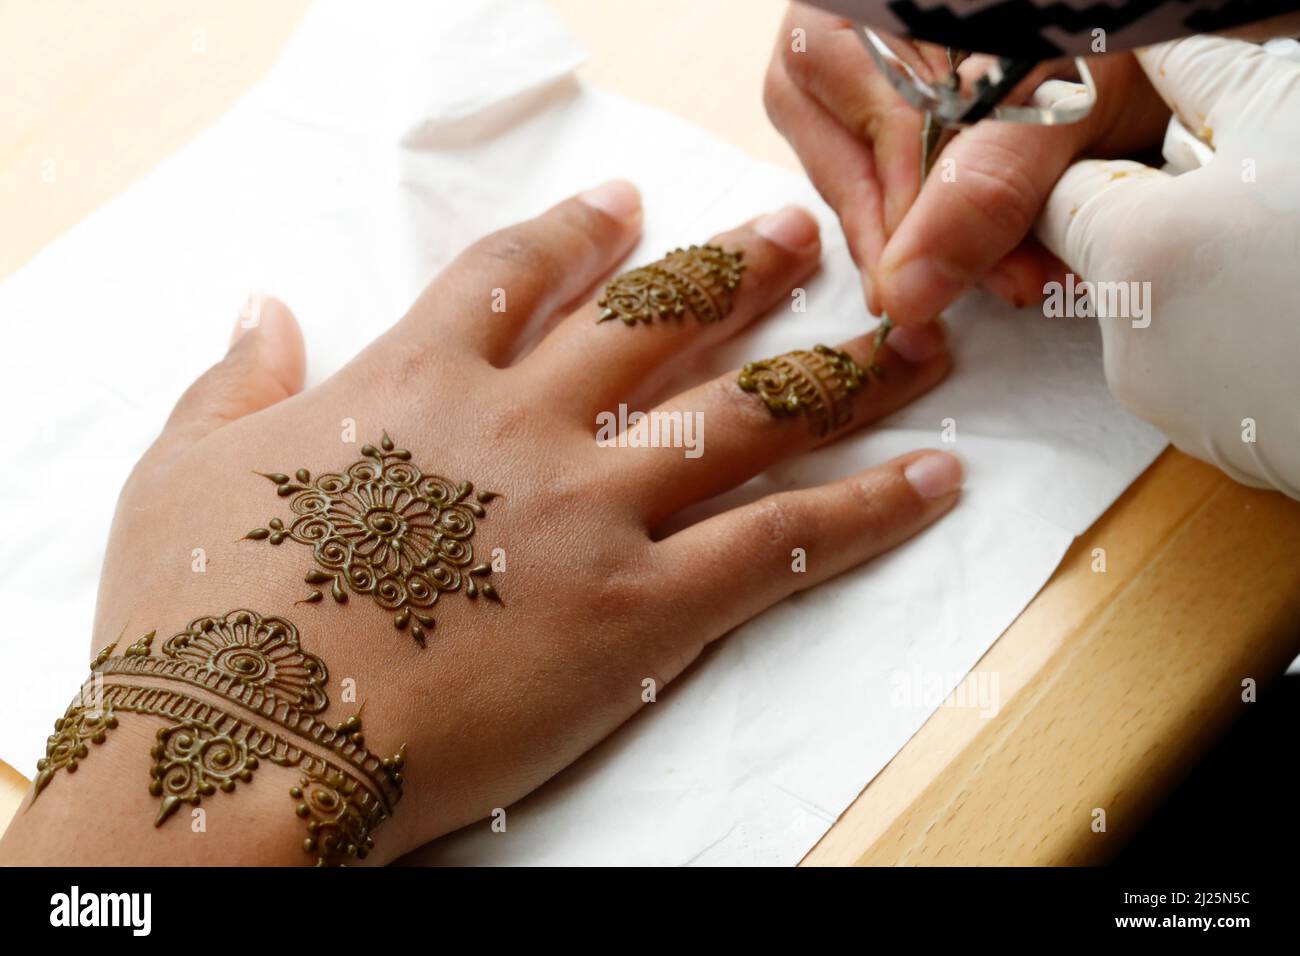 Artiste peintre traditionnel arabe henné tatouage sur la main de femme. Banque D'Images